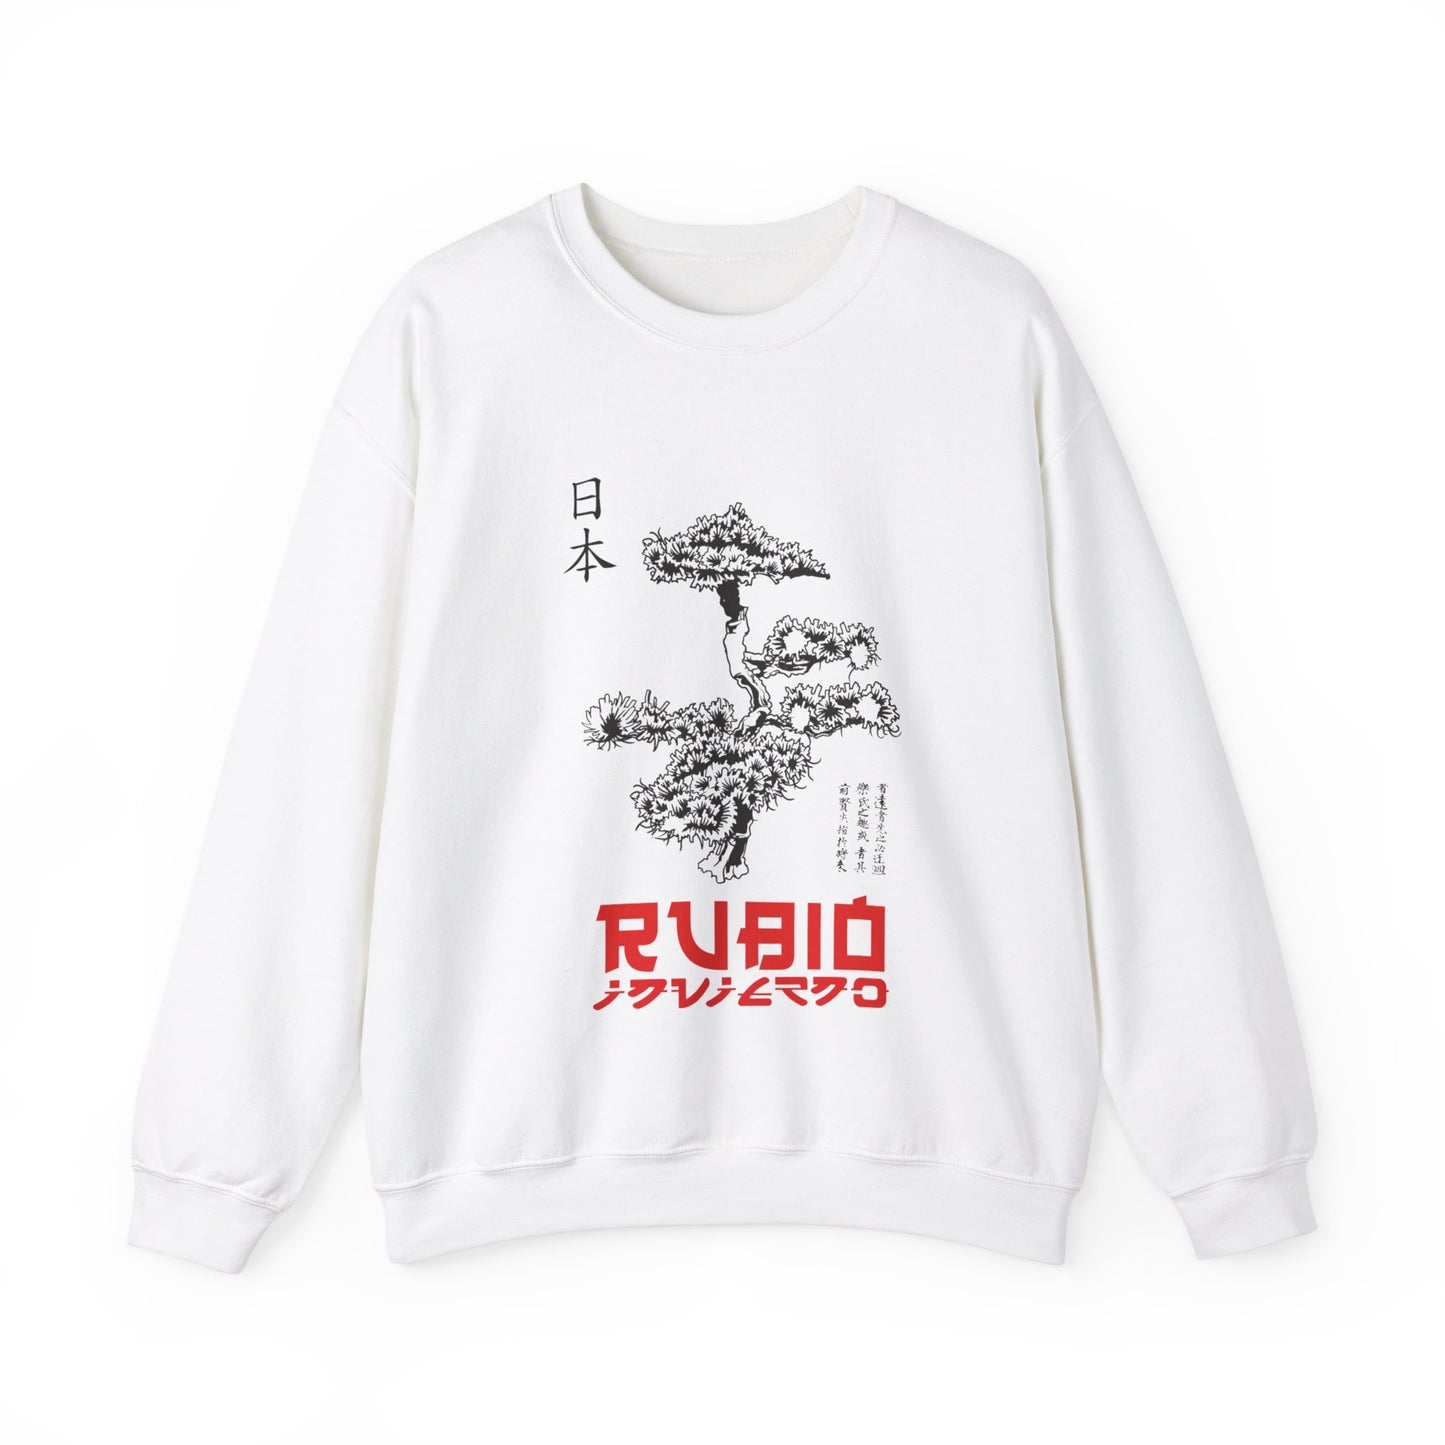 Rubio Invierno/Black White Sweater